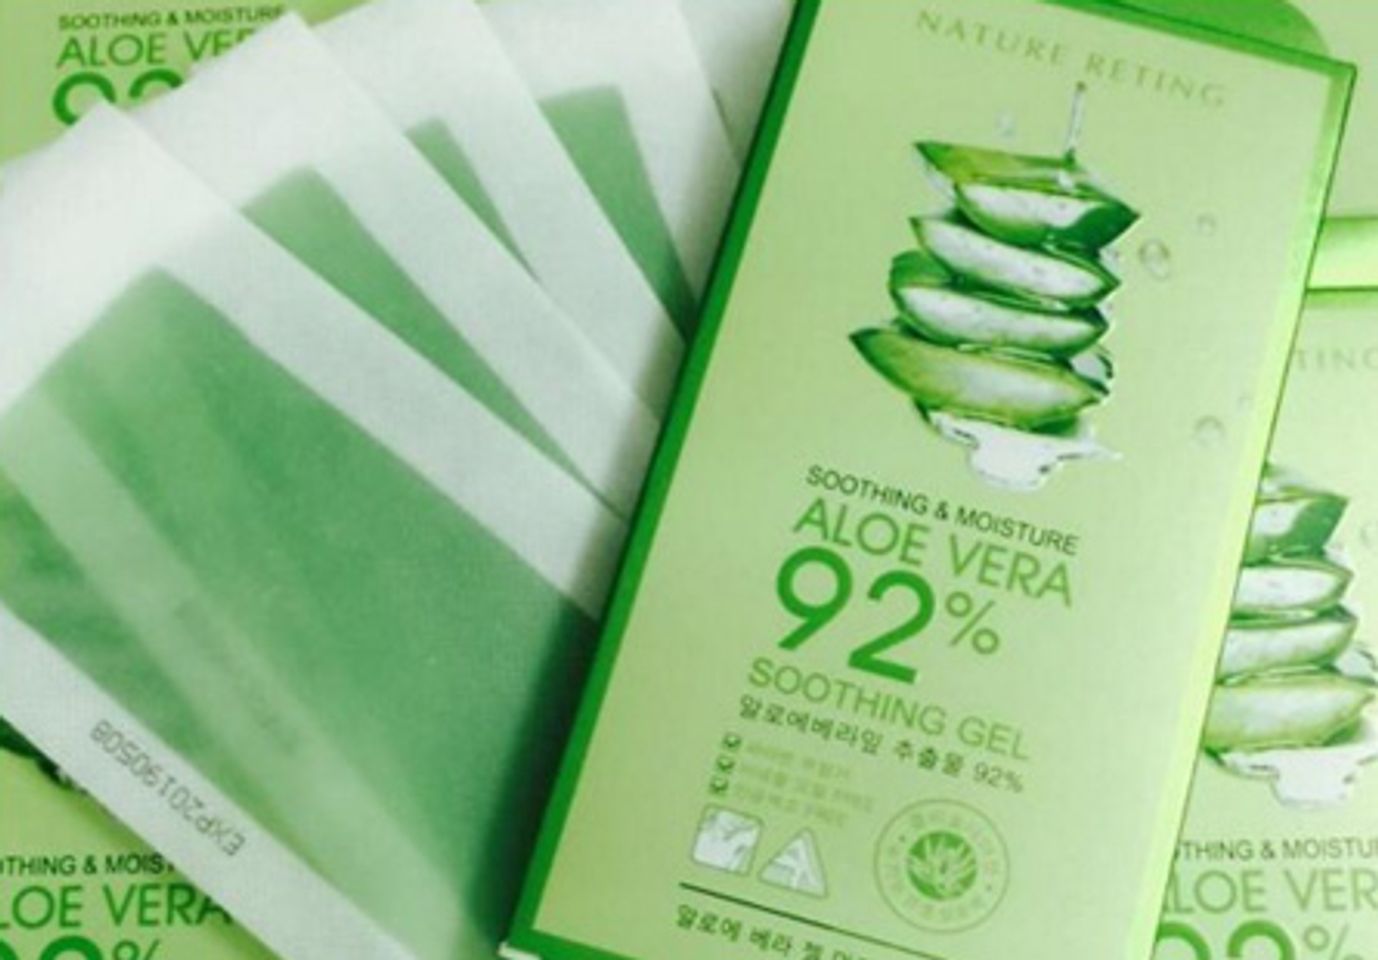 Miếng dán tẩy lông Aloe vera soothing gel tiện dụng và an toàn